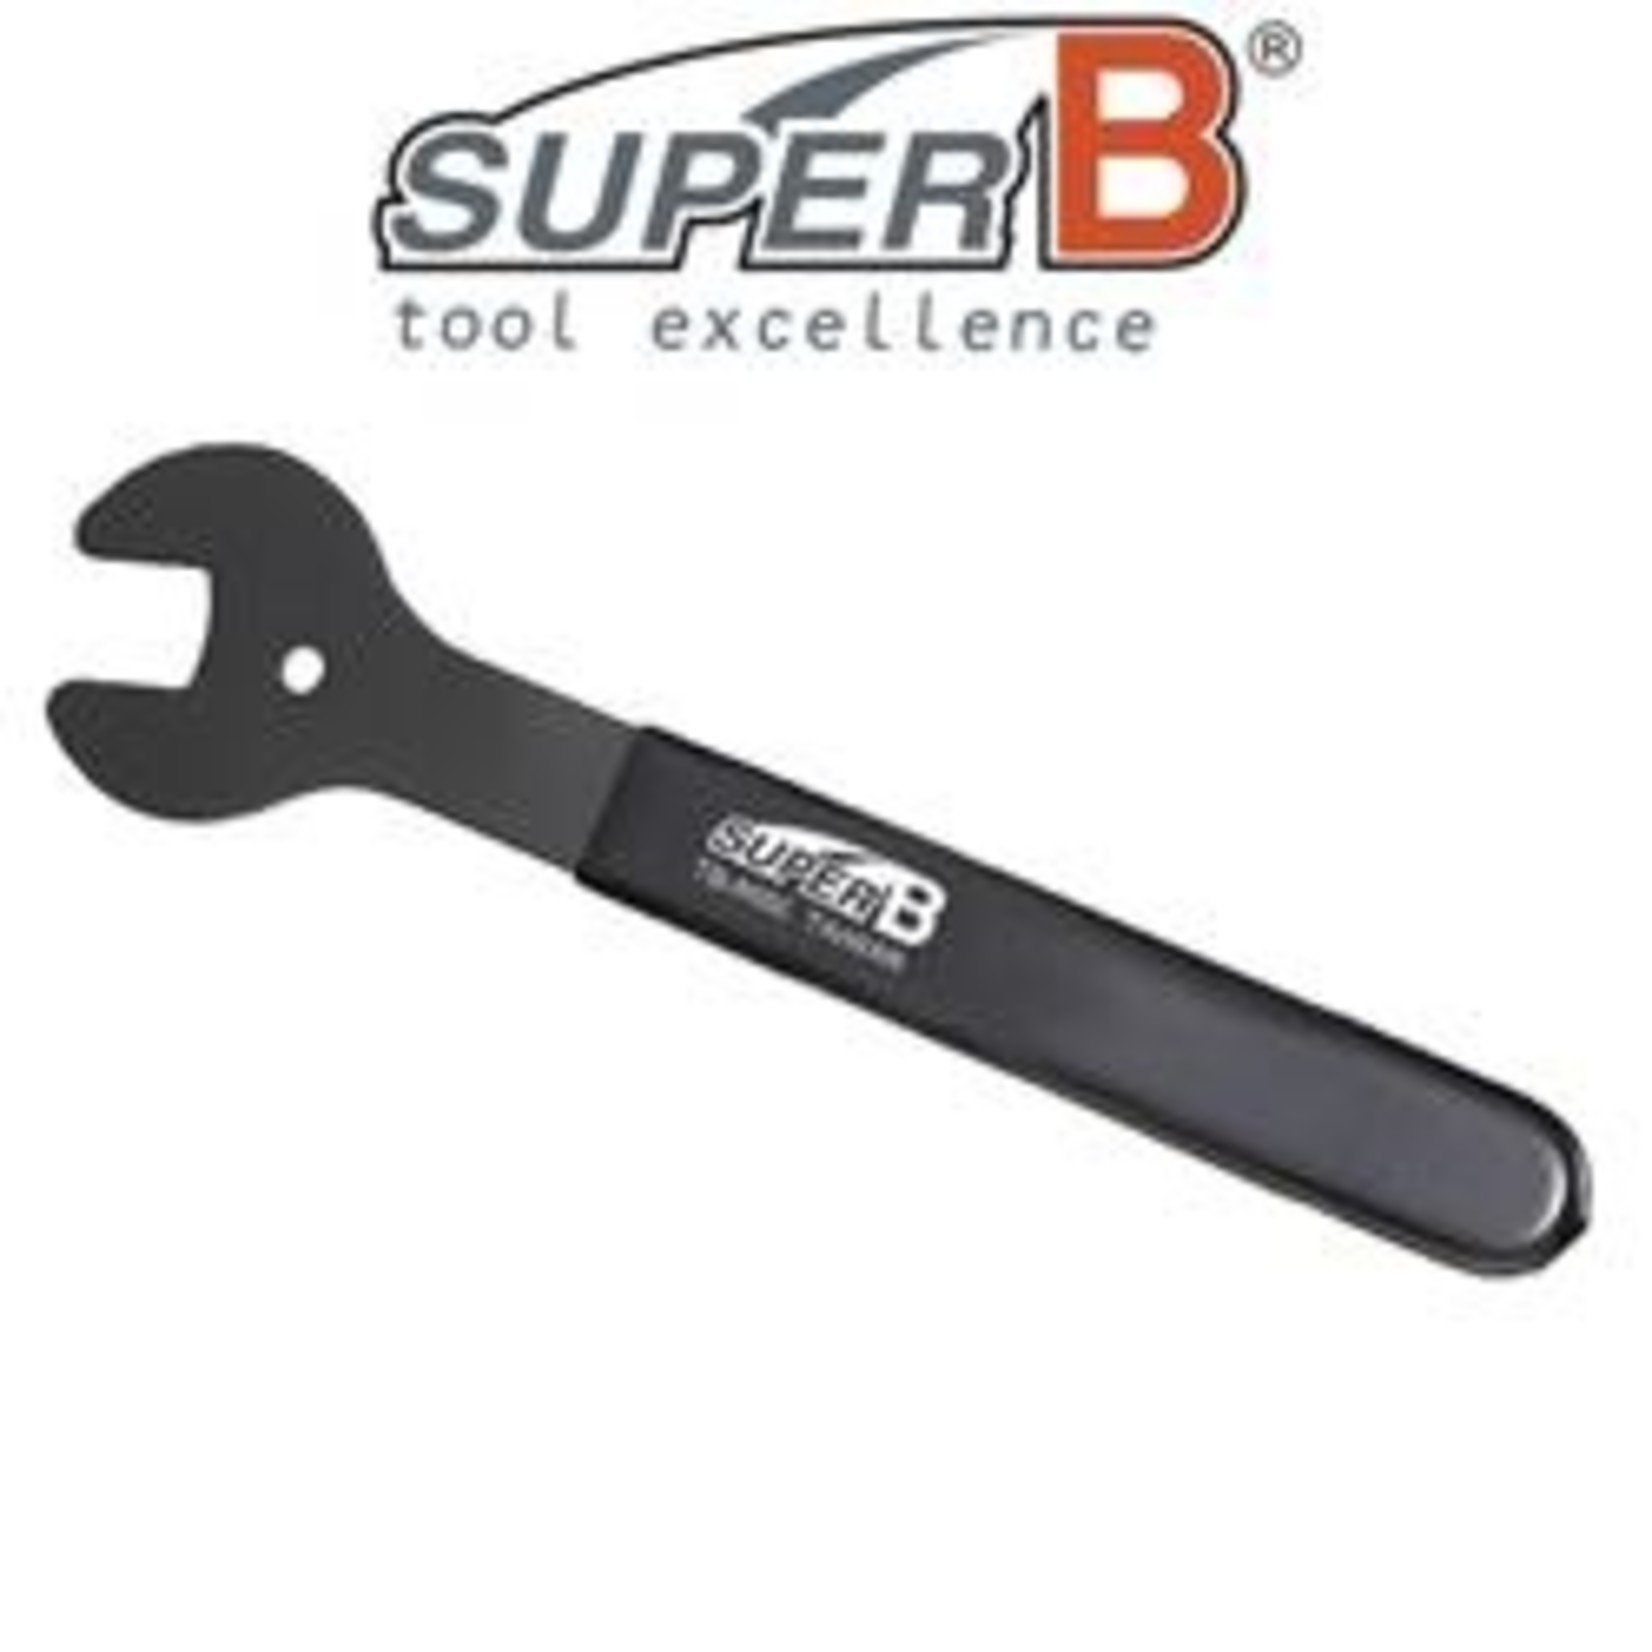 Super B SuperB Bike/Cycling Hub Cone Spanner - 16mm - Bike Tool